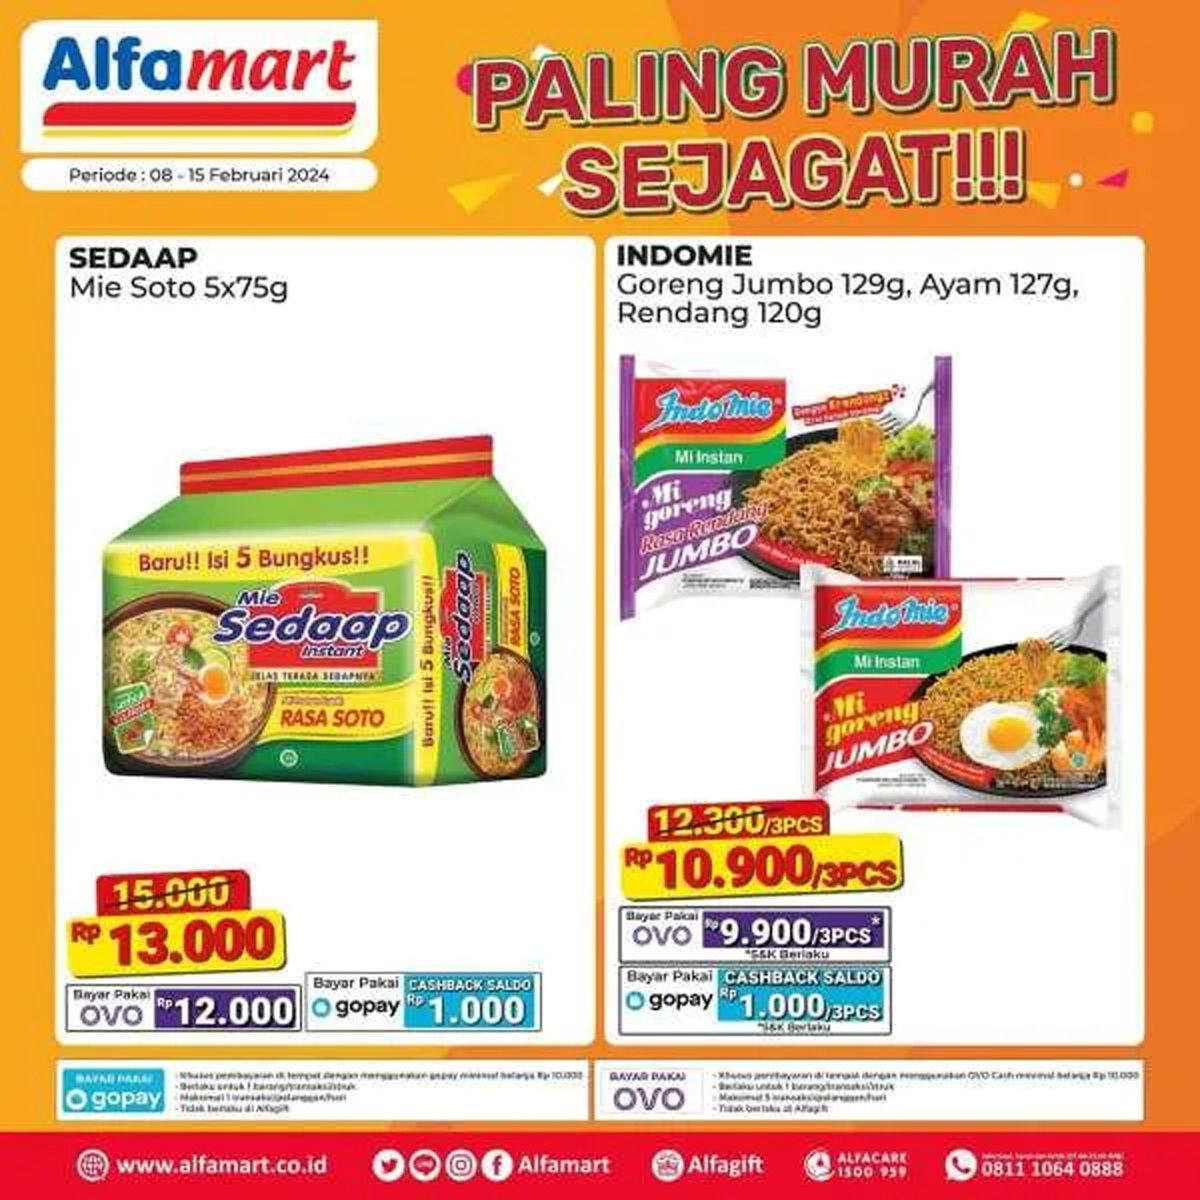  Katalog 4 produk yang dijual dalam program promo Alfamart Paling Murah Sejagat periode 8 - 15 Februari 2024./Instagram Alfamart.